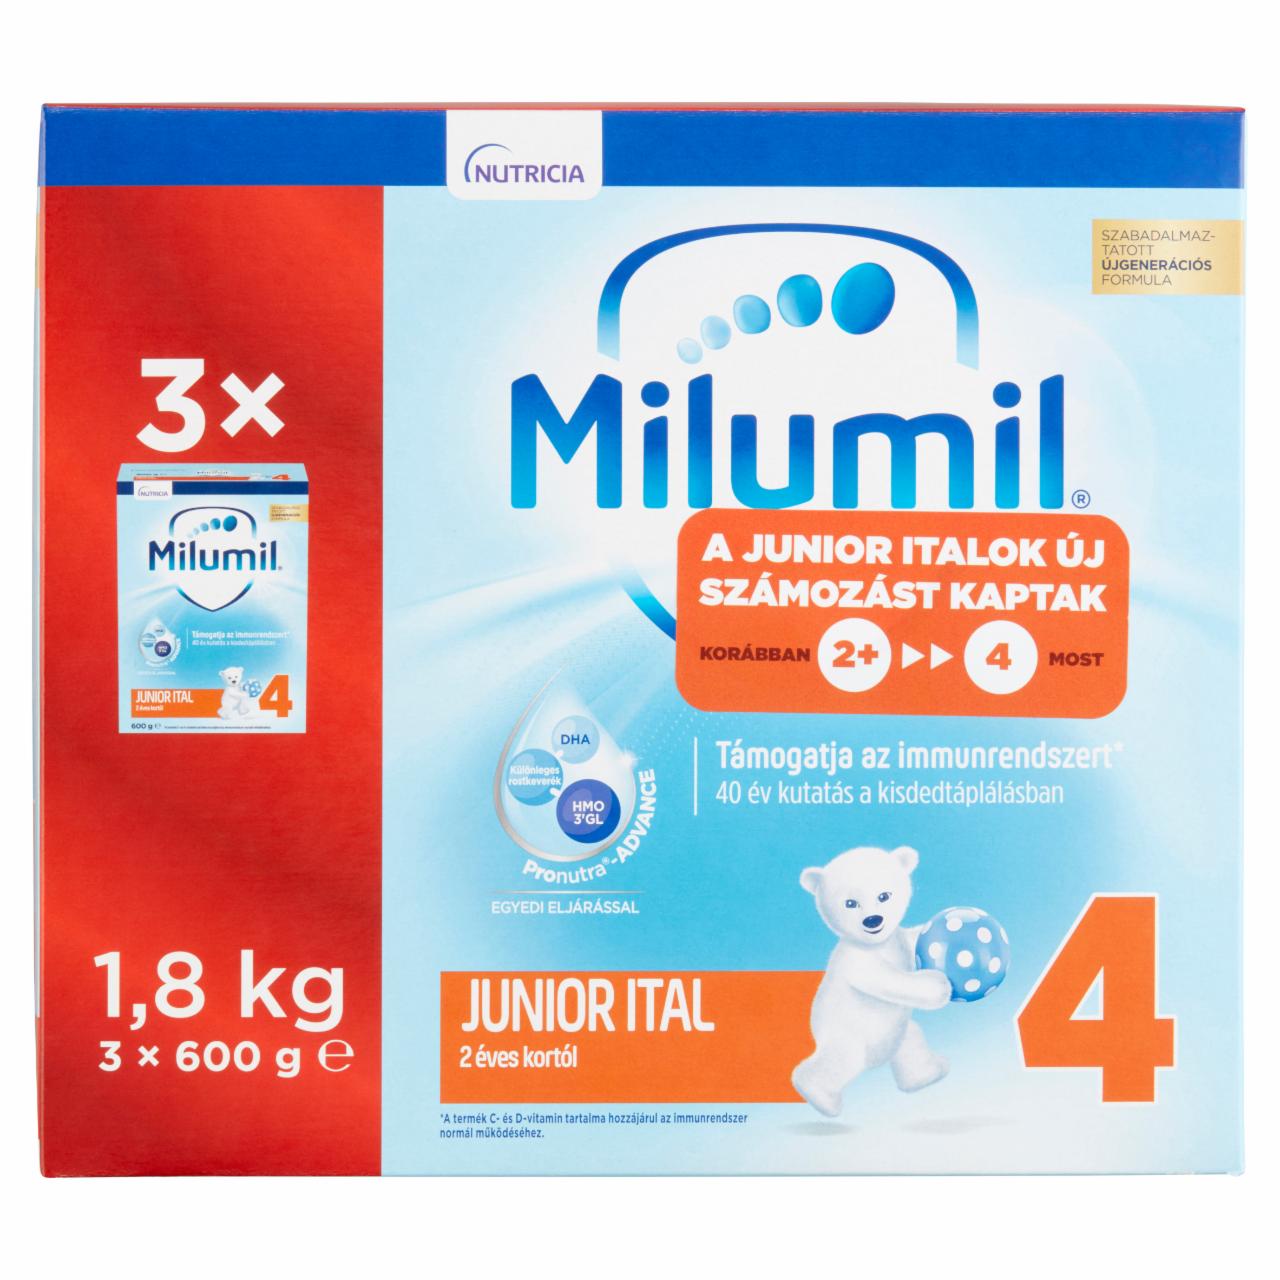 Képek - Milumil 4 Junior ital 2 éves kortól 3 x 600 g (1,8 kg)